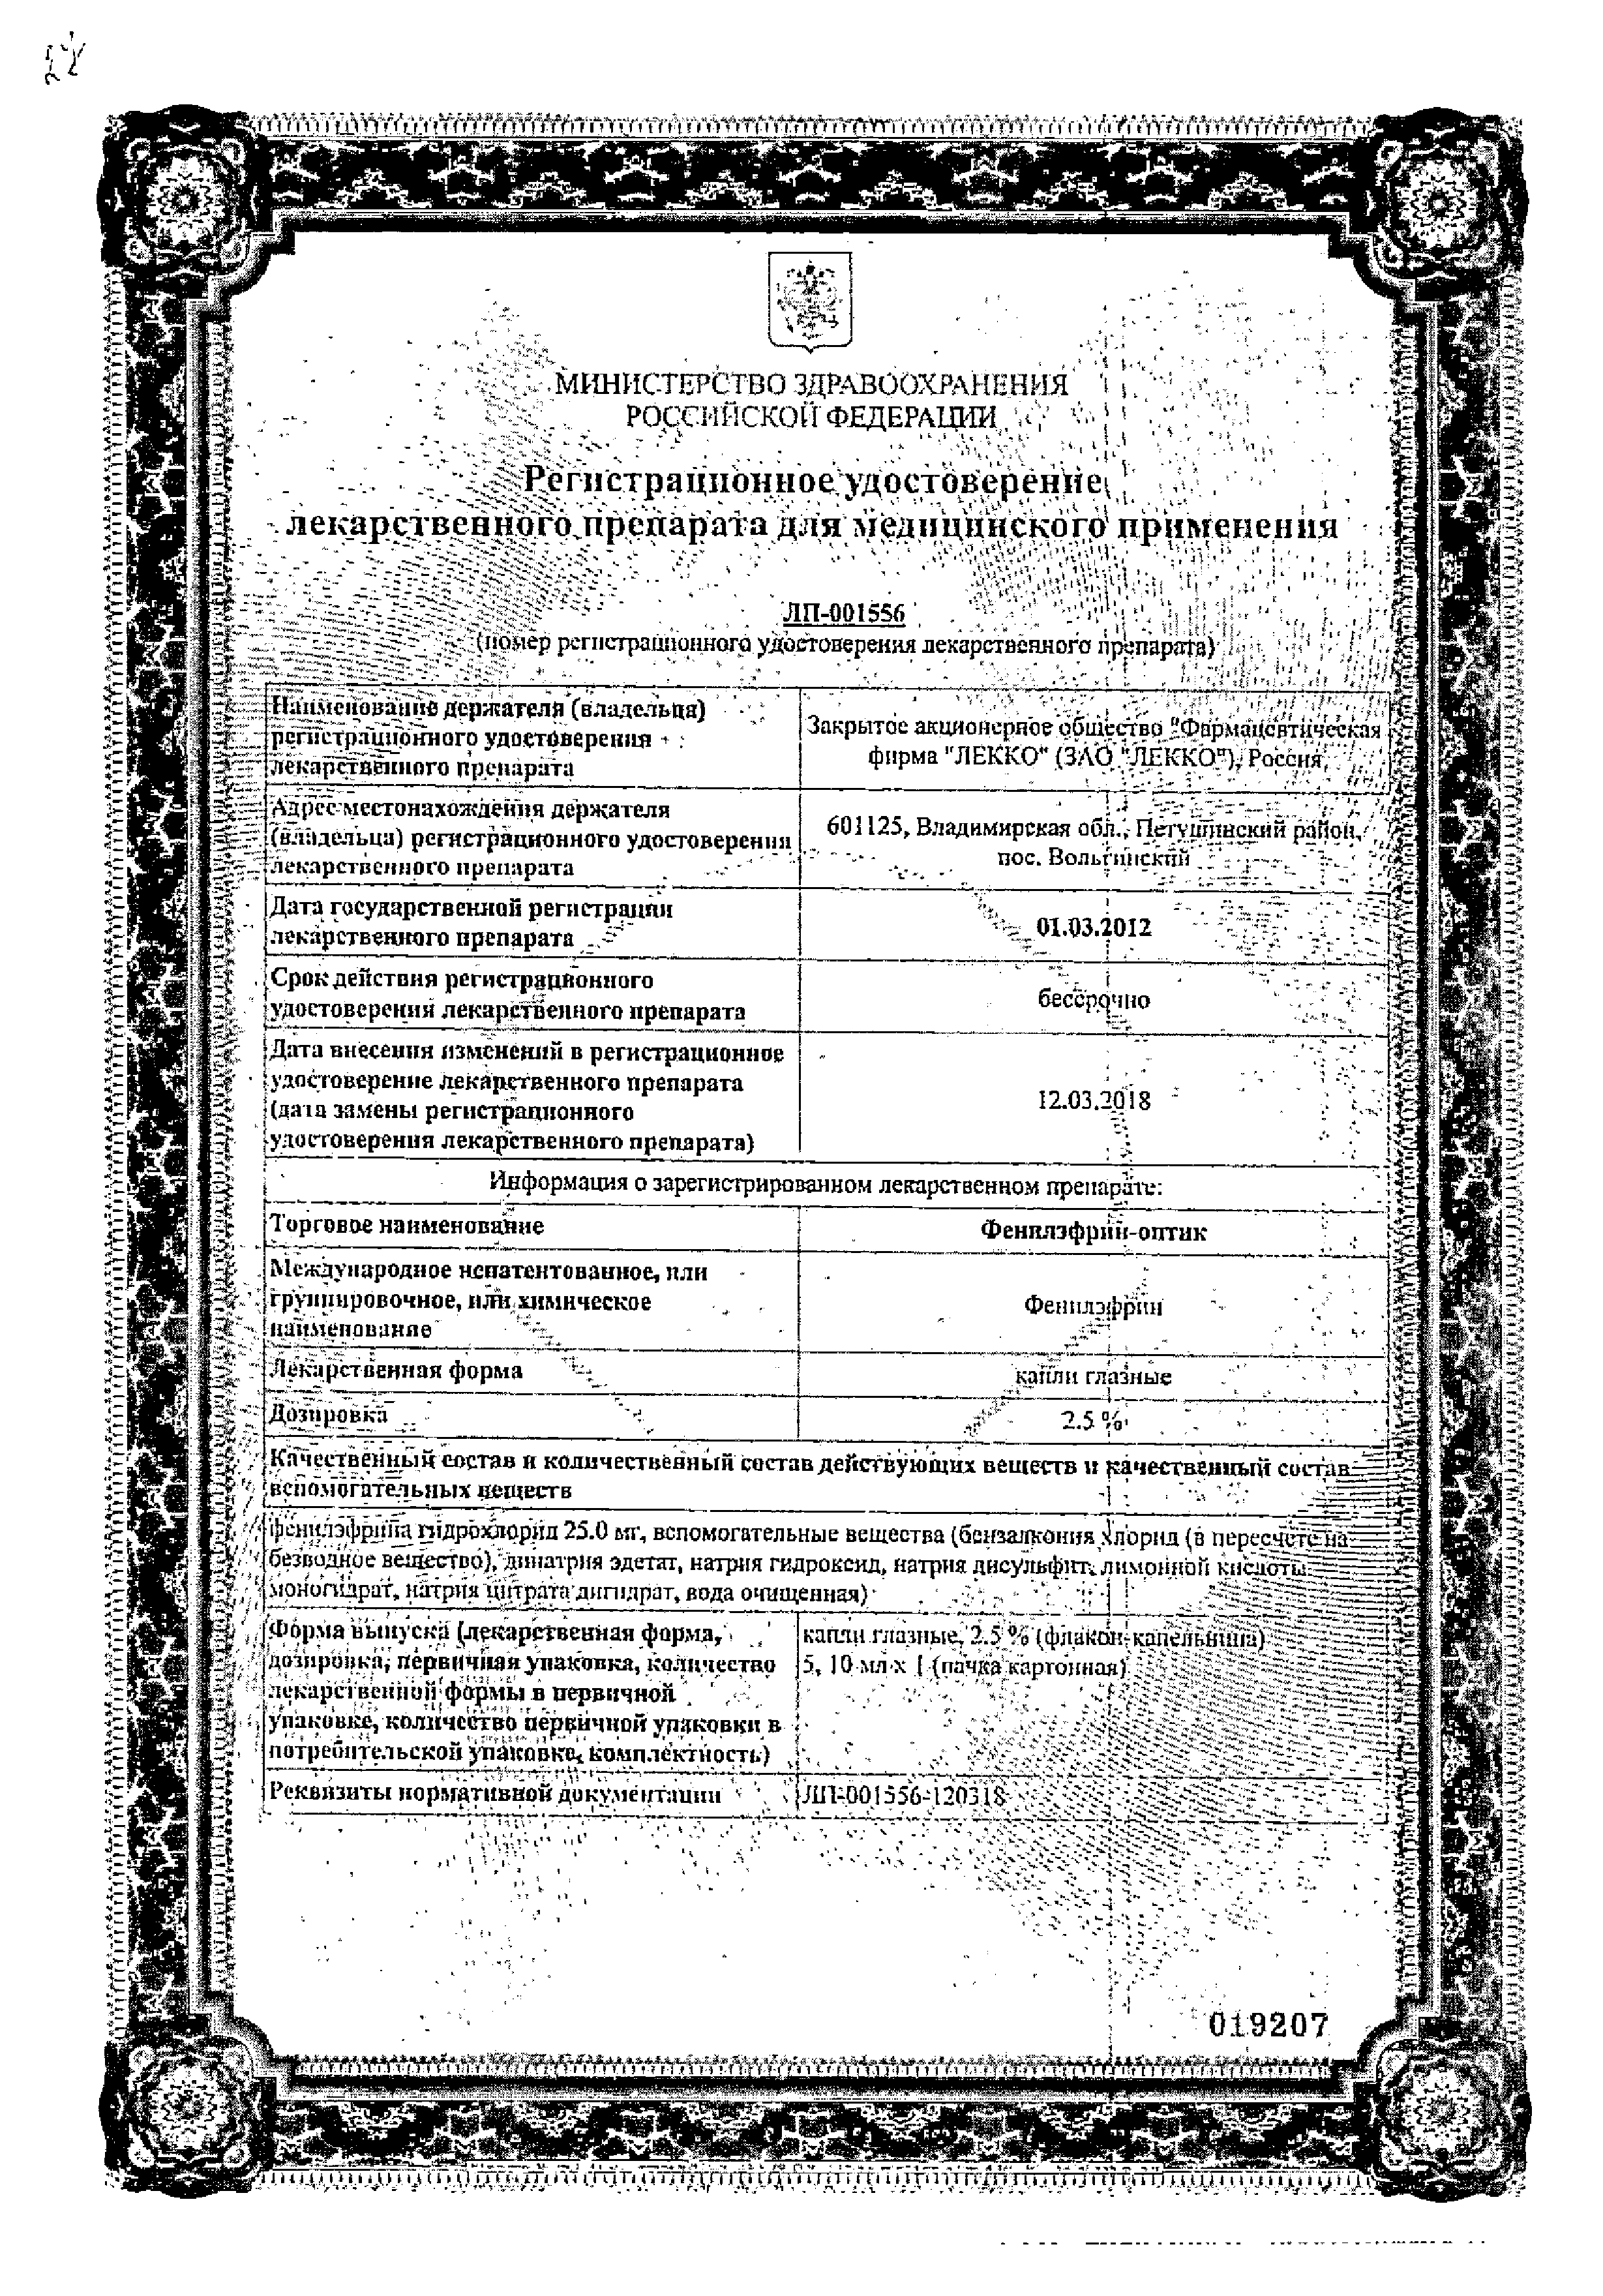 Фенилэфрин-оптик сертификат